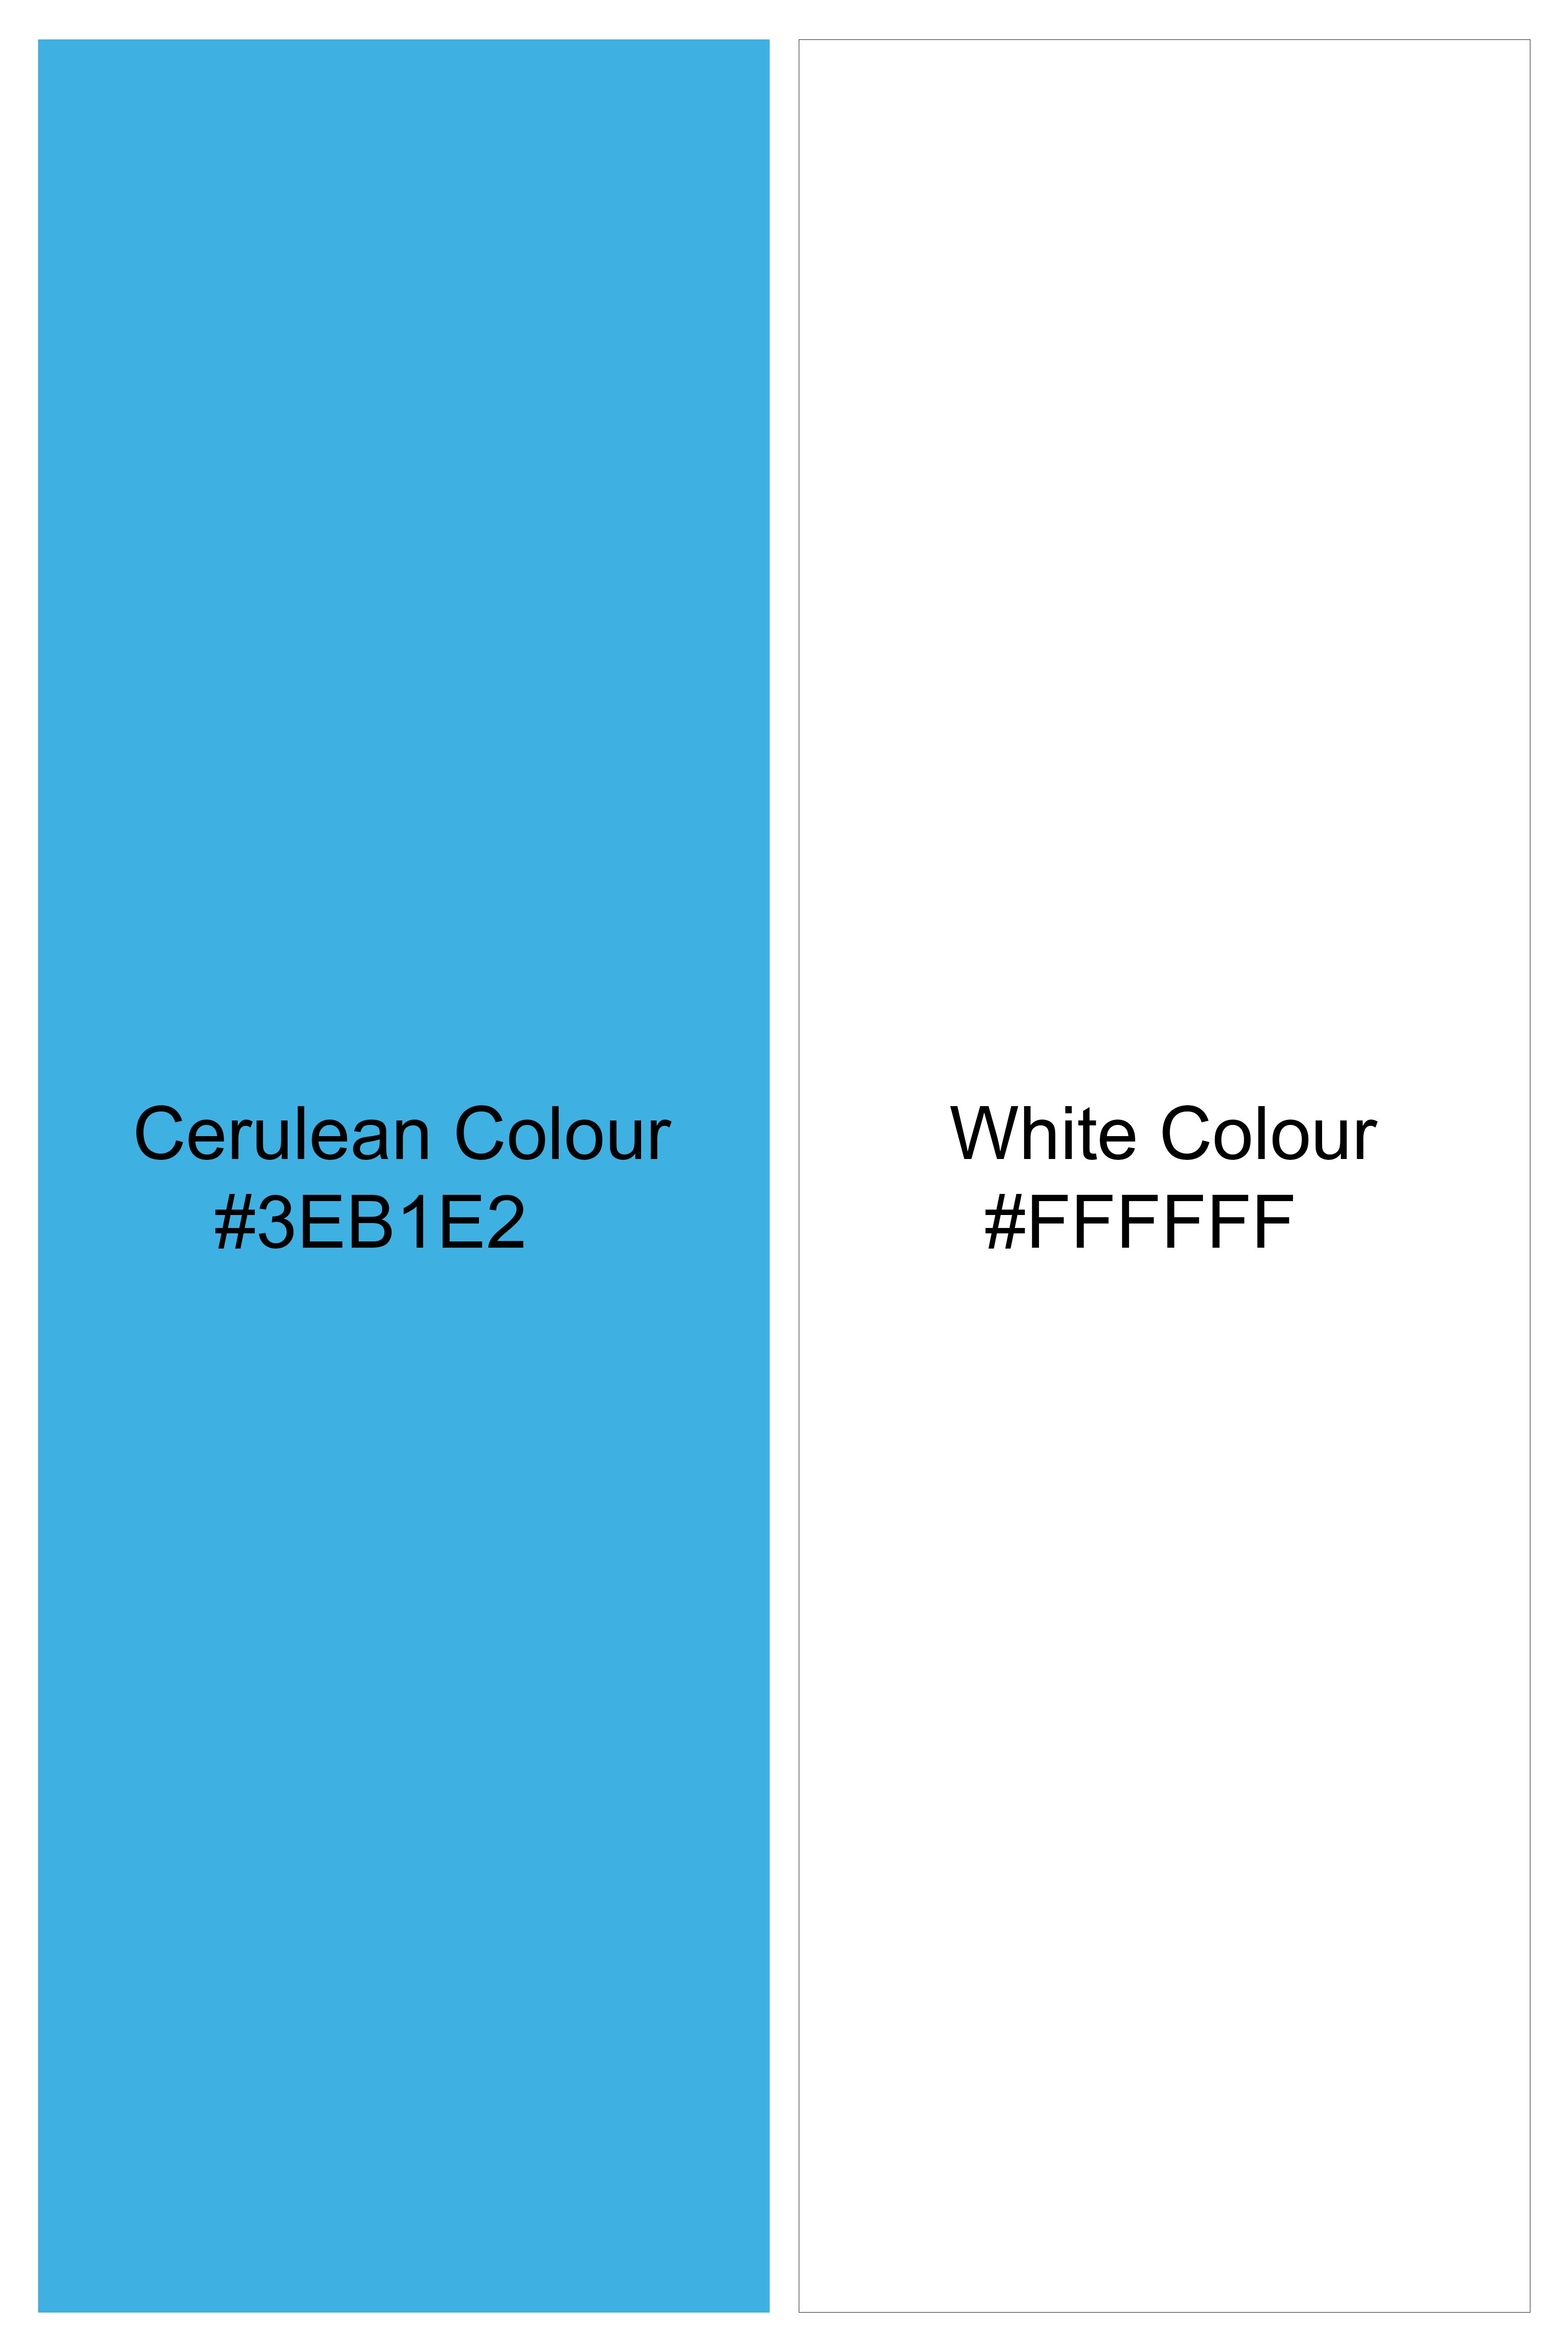 Cerulean Blue and White Jacquard Textured Premium Giza Cotton Shirt 10200-38, 10200-H-38, 10200-39, 10200-H-39, 10200-40, 10200-H-40, 10200-42, 10200-H-42, 10200-44, 10200-H-44, 10200-46, 10200-H-46, 10200-48, 10200-H-48, 10200-50, 10200-H-50, 10200-52, 10200-H-52